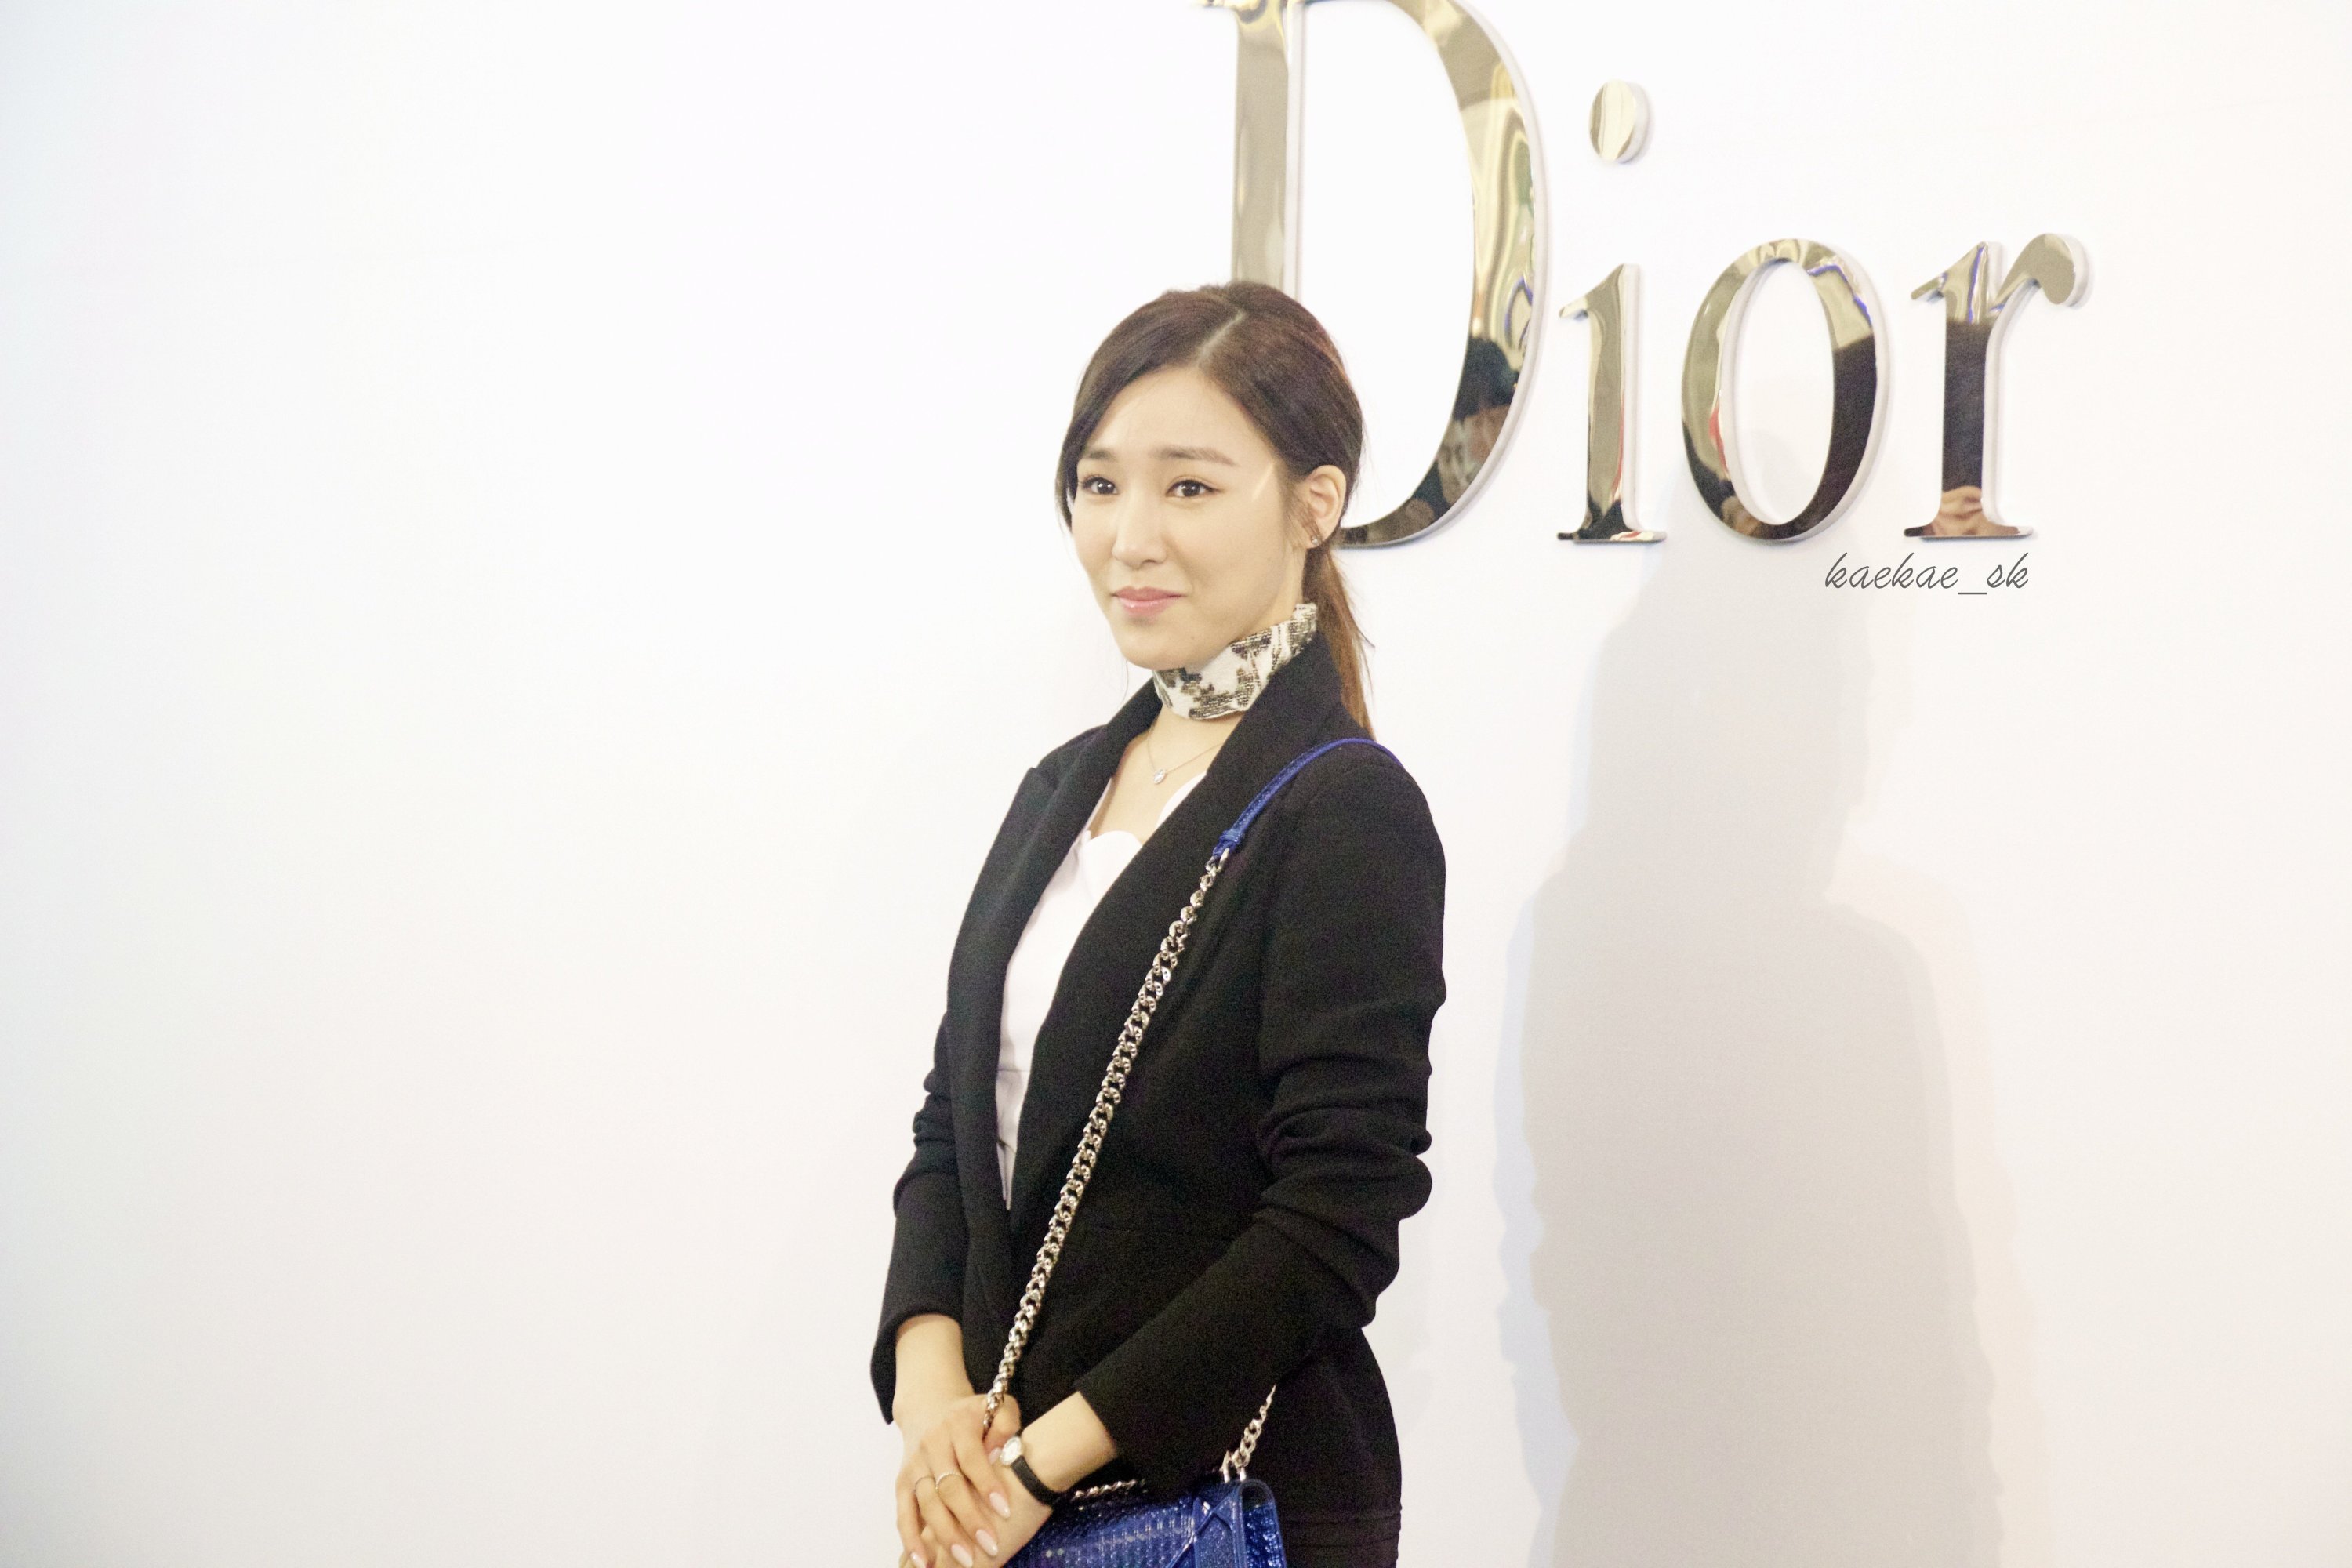 [PIC][17-02-2016]Tiffany khởi hành đi Thái Lan để tham dự sự kiện khai trương chi nhánh của thương hiệu "Christian Dior" vào hôm nay - Page 8 T7ffY4txkz-3000x3000